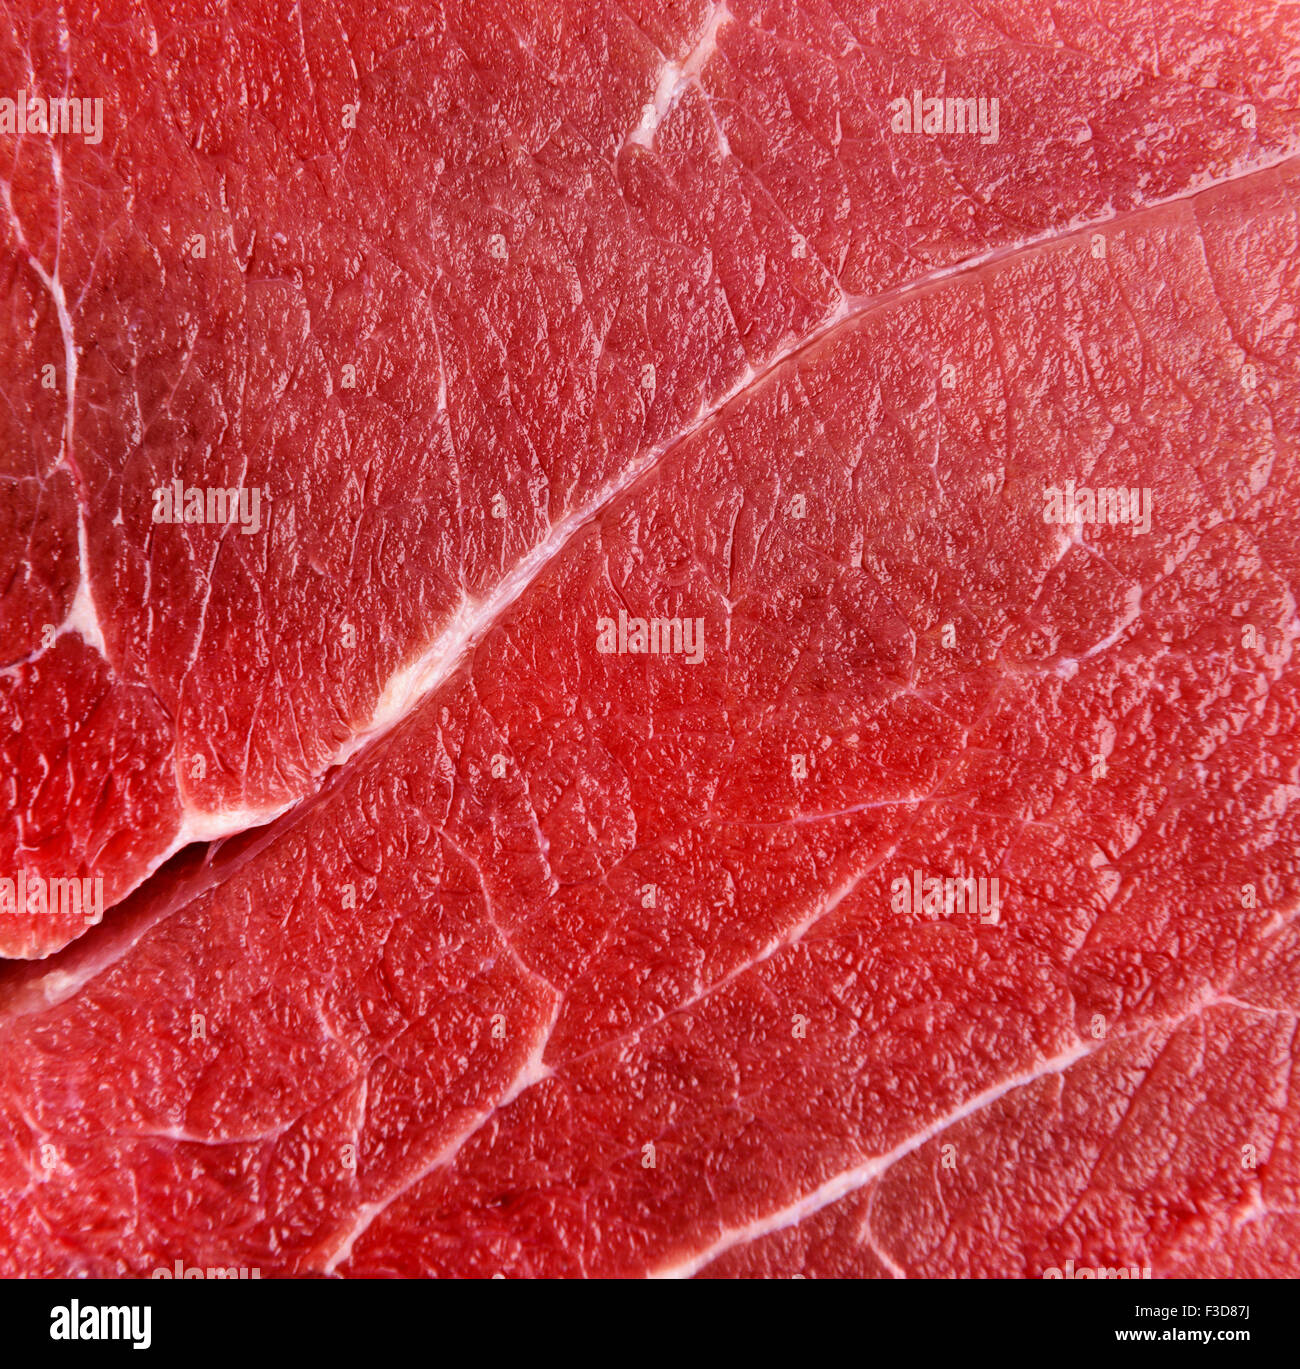 Rohes Rindfleisch rote Fleischkonsistenz Makro oder Hintergrund Stockfoto